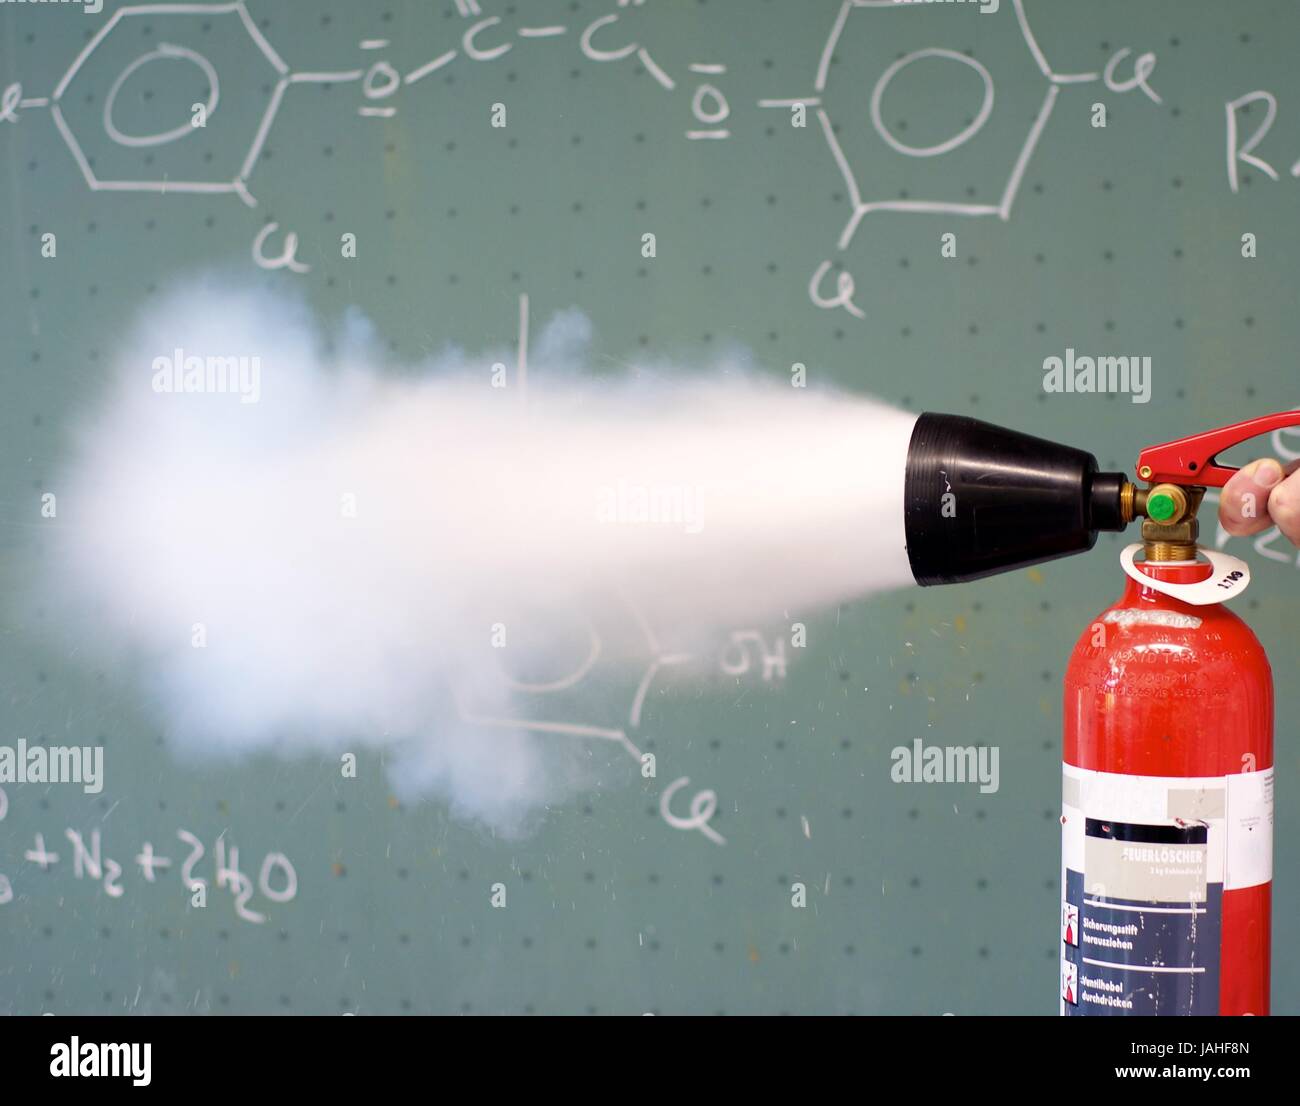 CO2 Feuerlöscher im Einsatz in einem Labor Stock Photo - Alamy